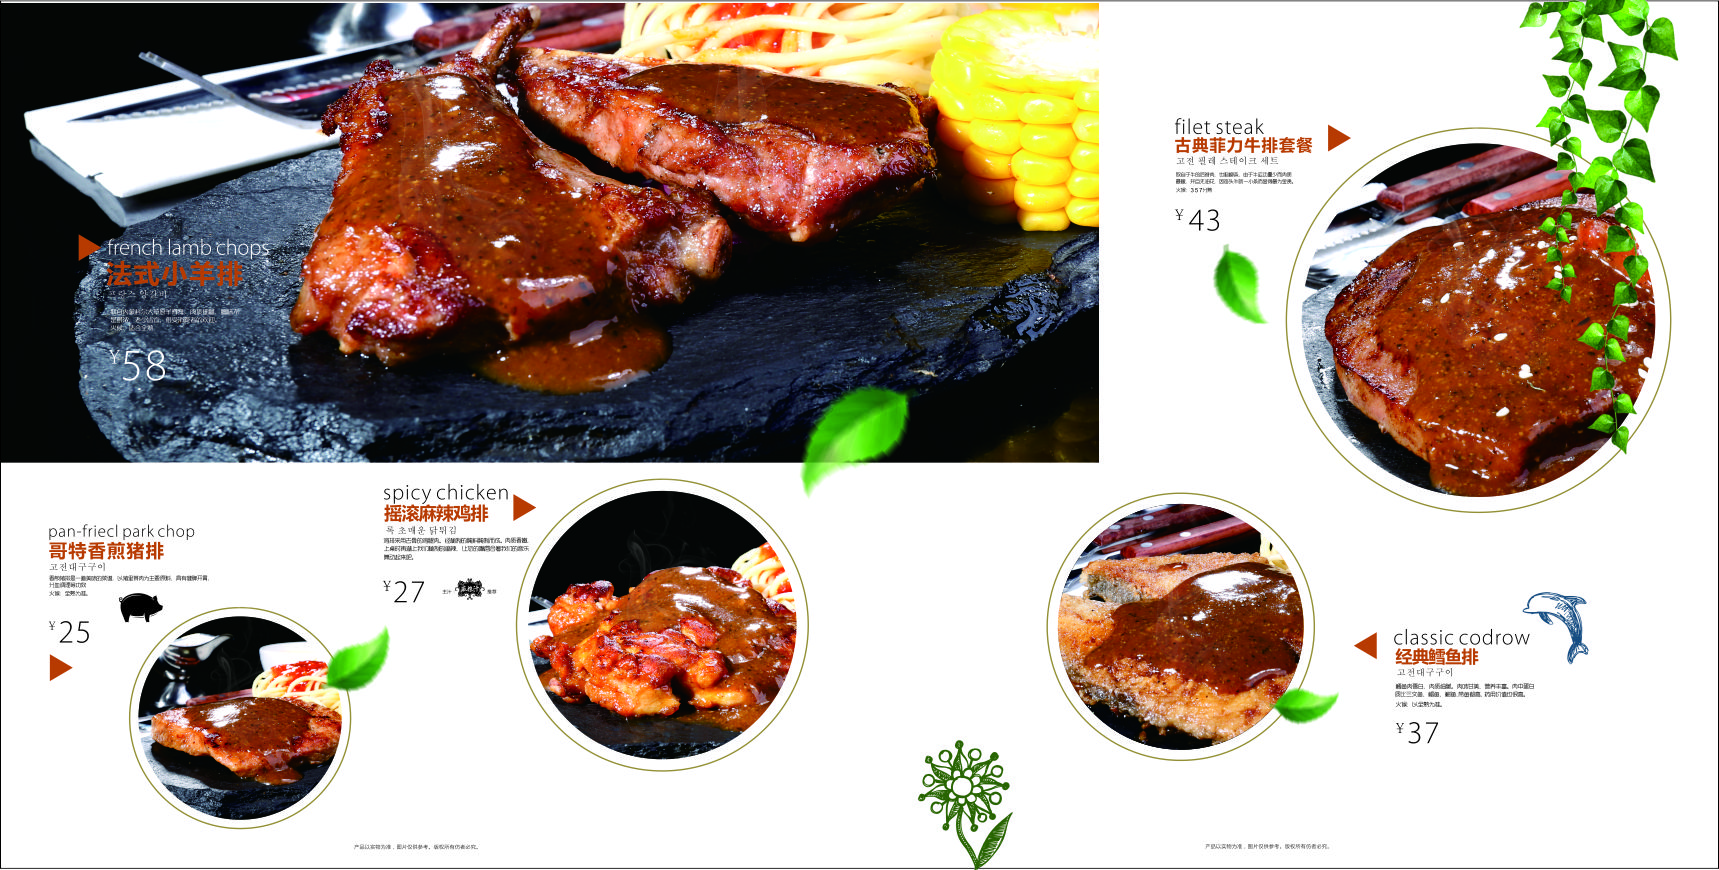 上海牛排品牌加盟代理,米索西牛排加盟行业人气旺盛